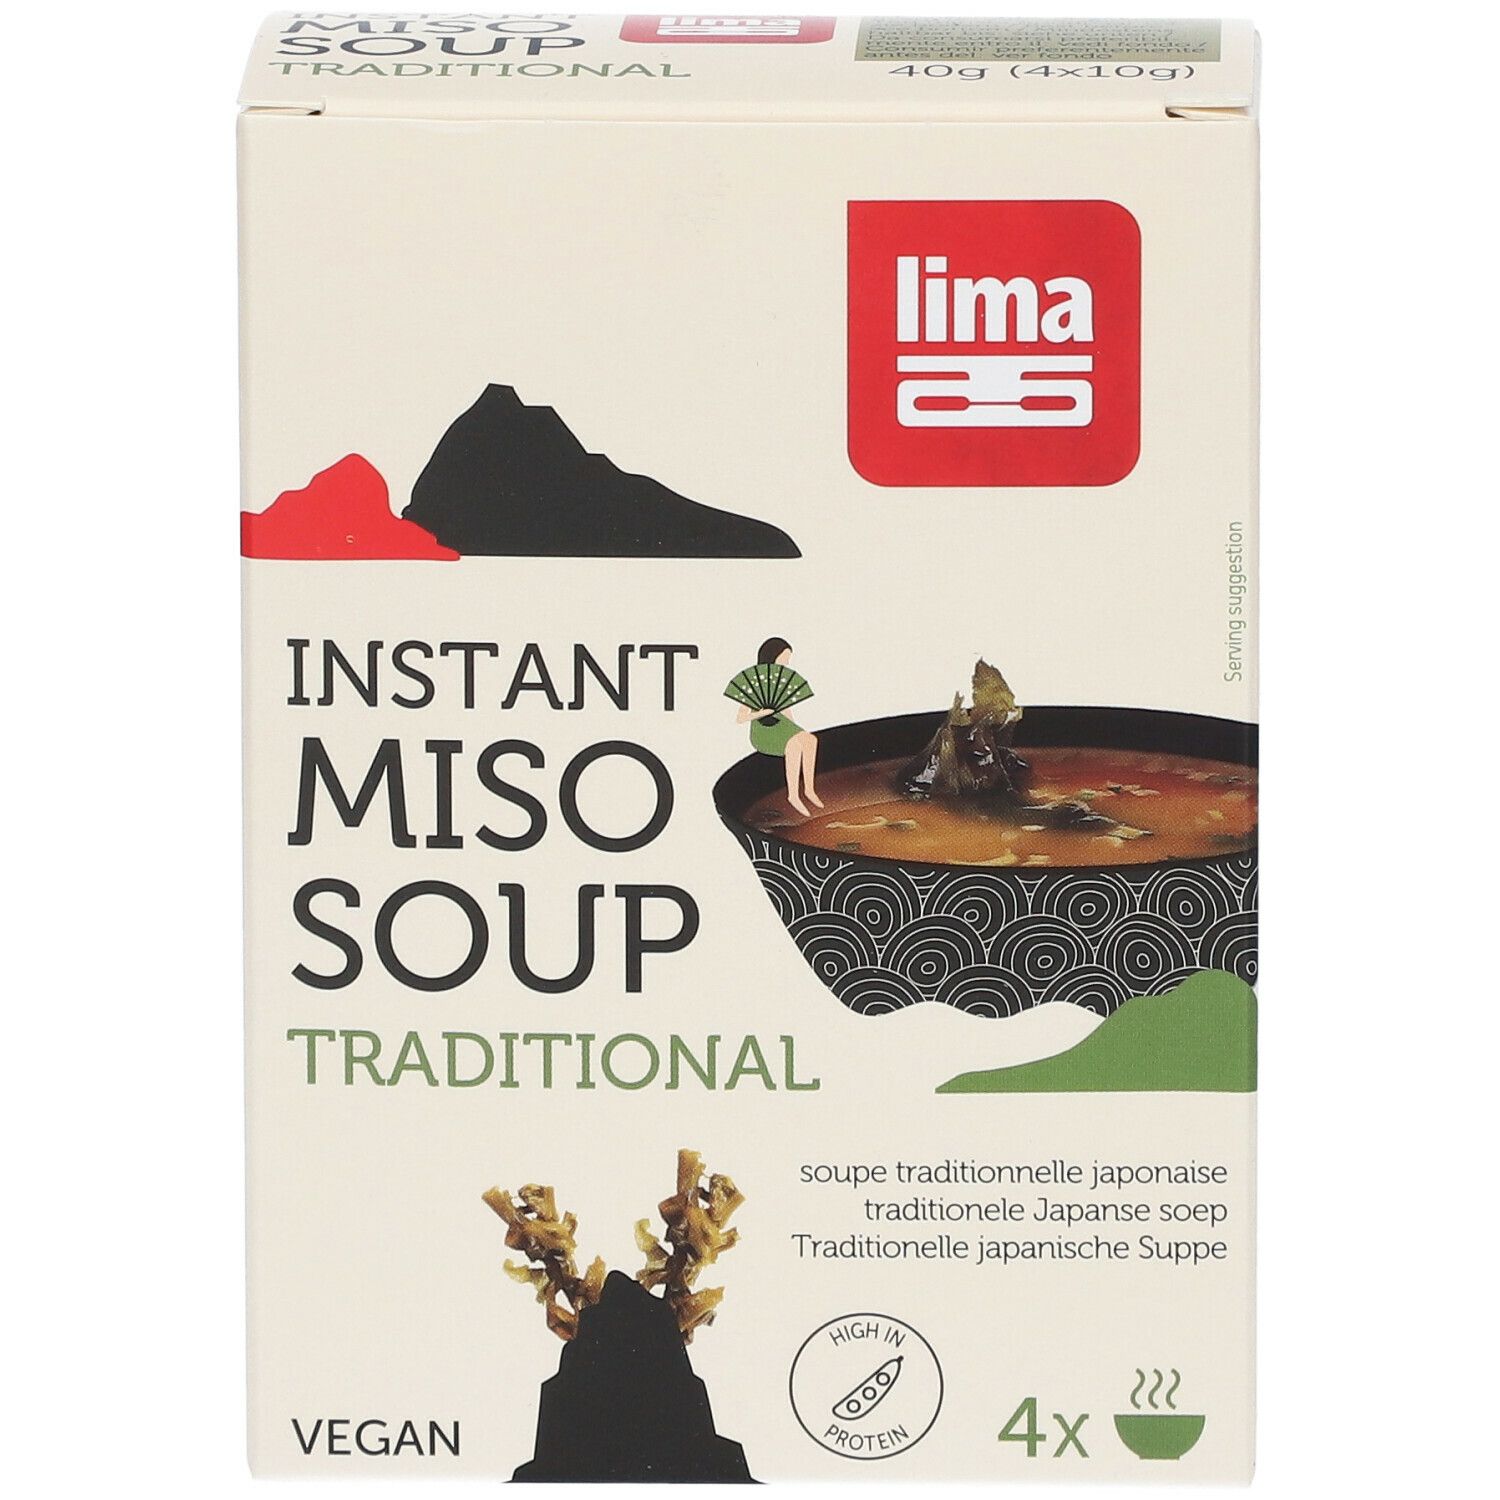 Lima Instant Miso Soupe